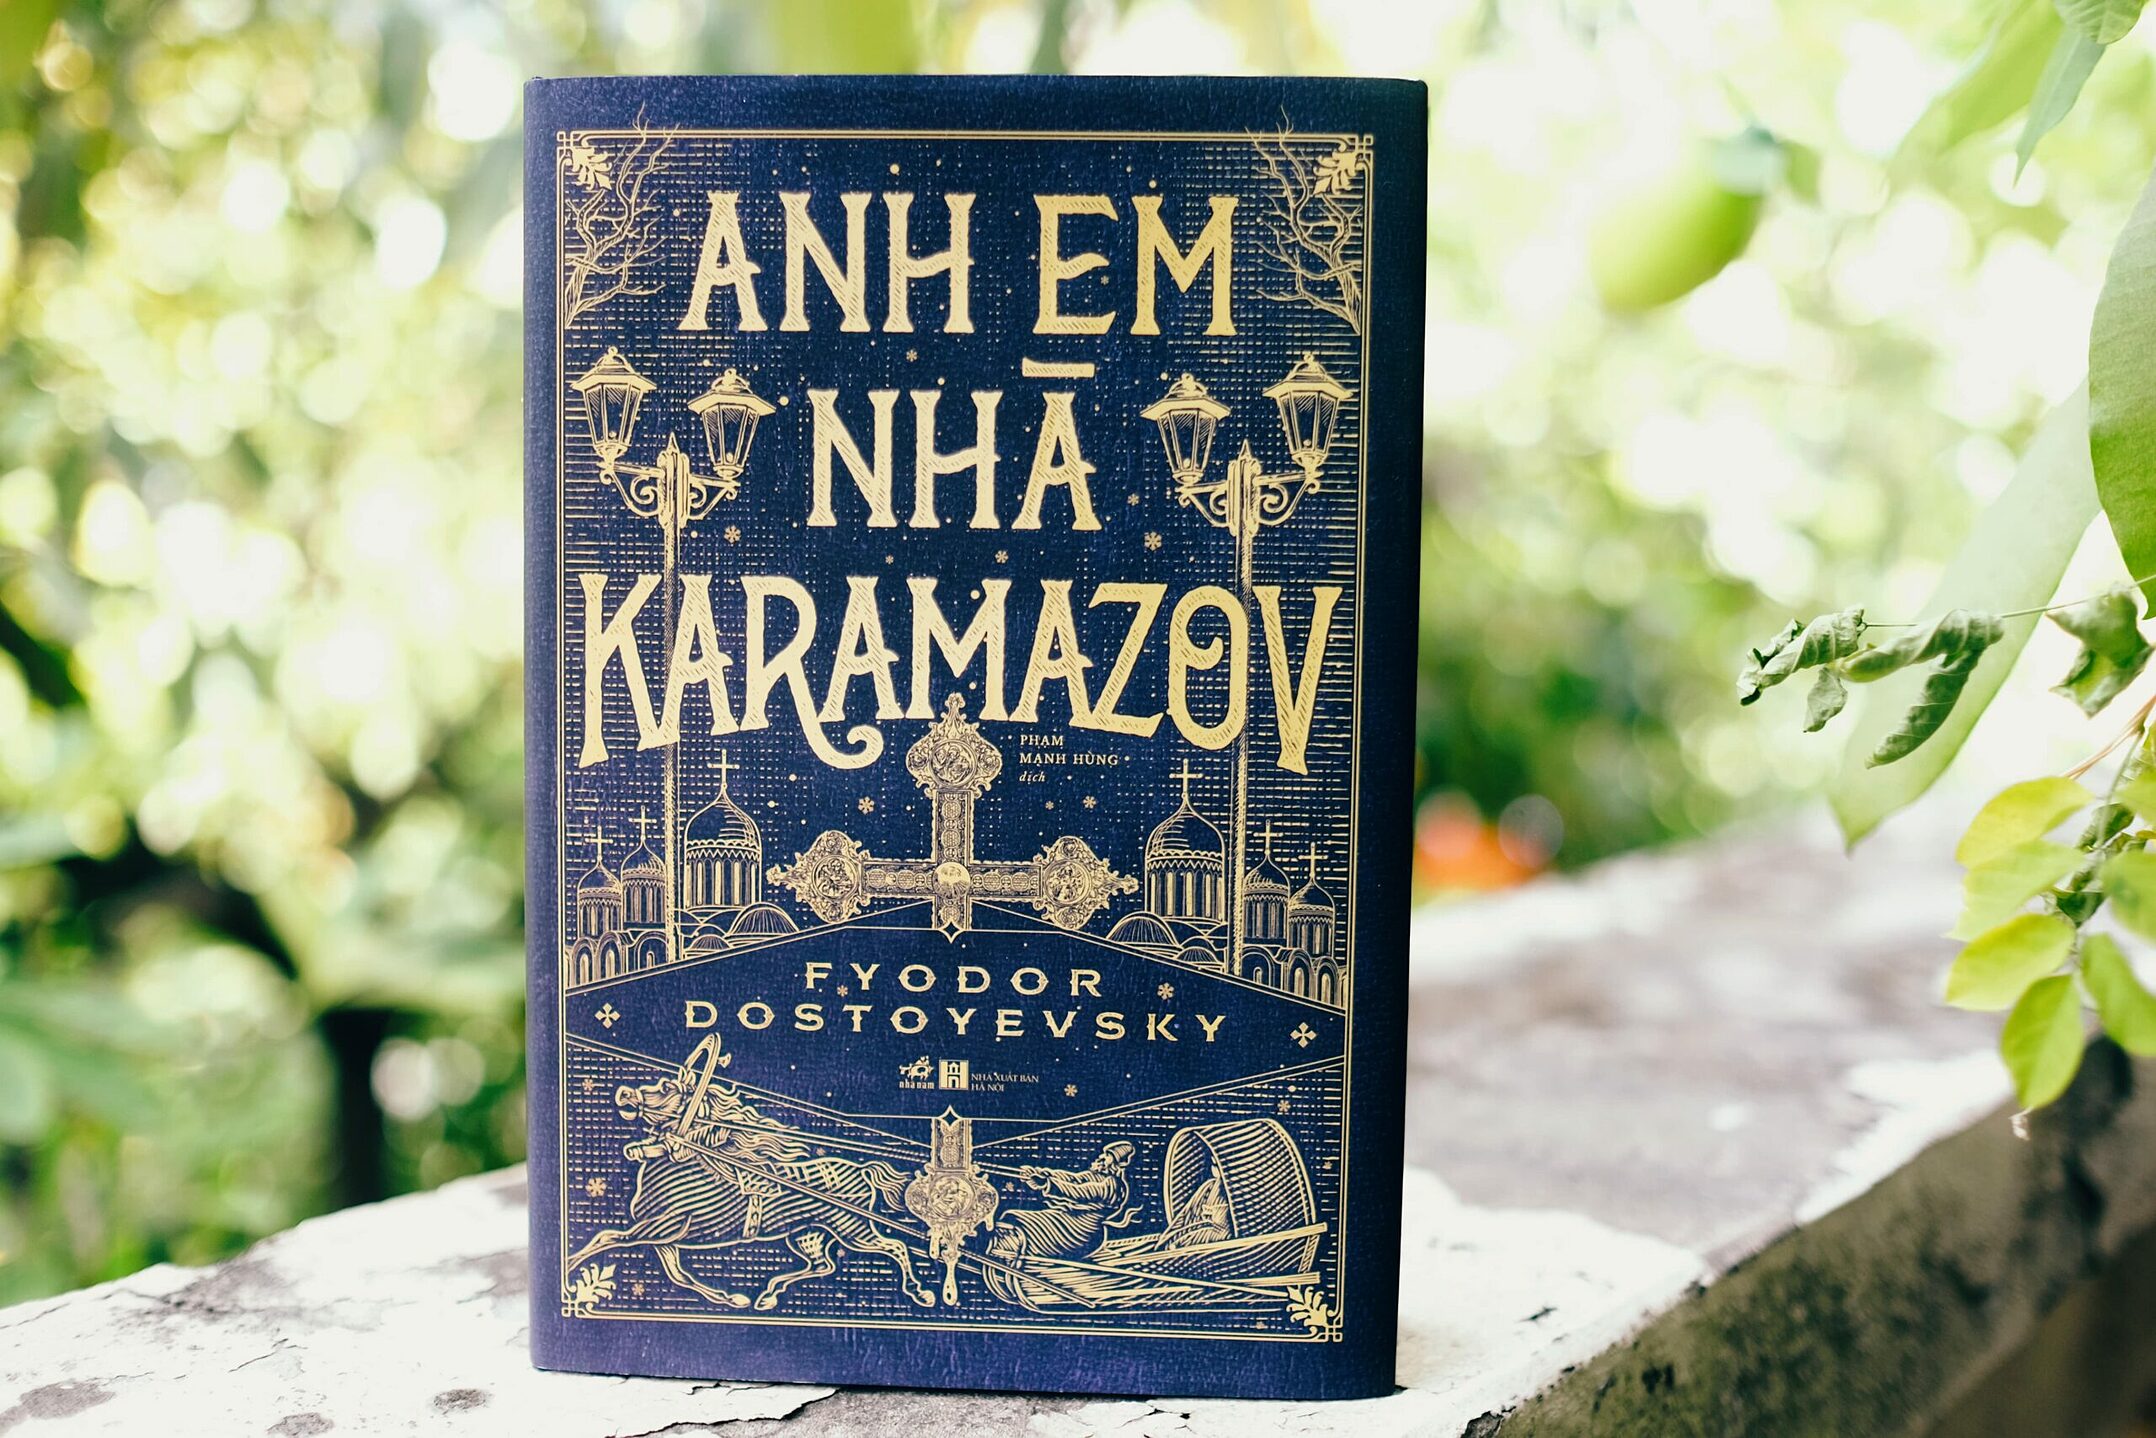 Cuốn Anh em nhà Karamazov do Nhã Nam ấn hành. Ảnh: Nhã Nam